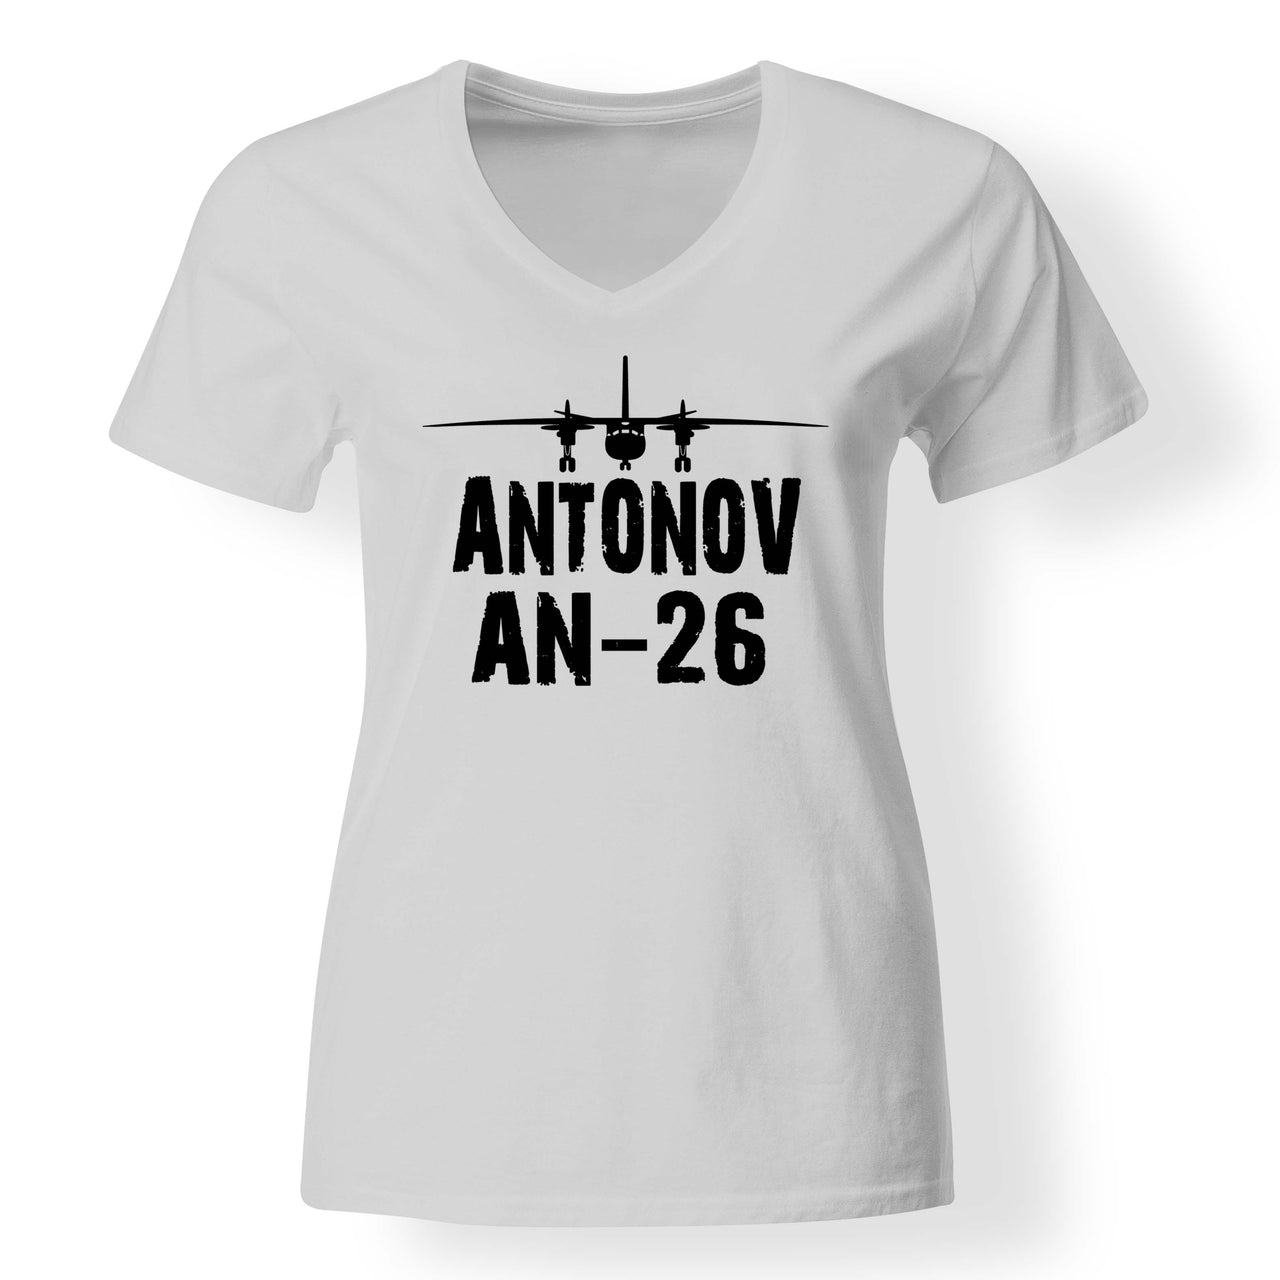 Antonov AN-26 & Plane Designed V-Neck T-Shirts